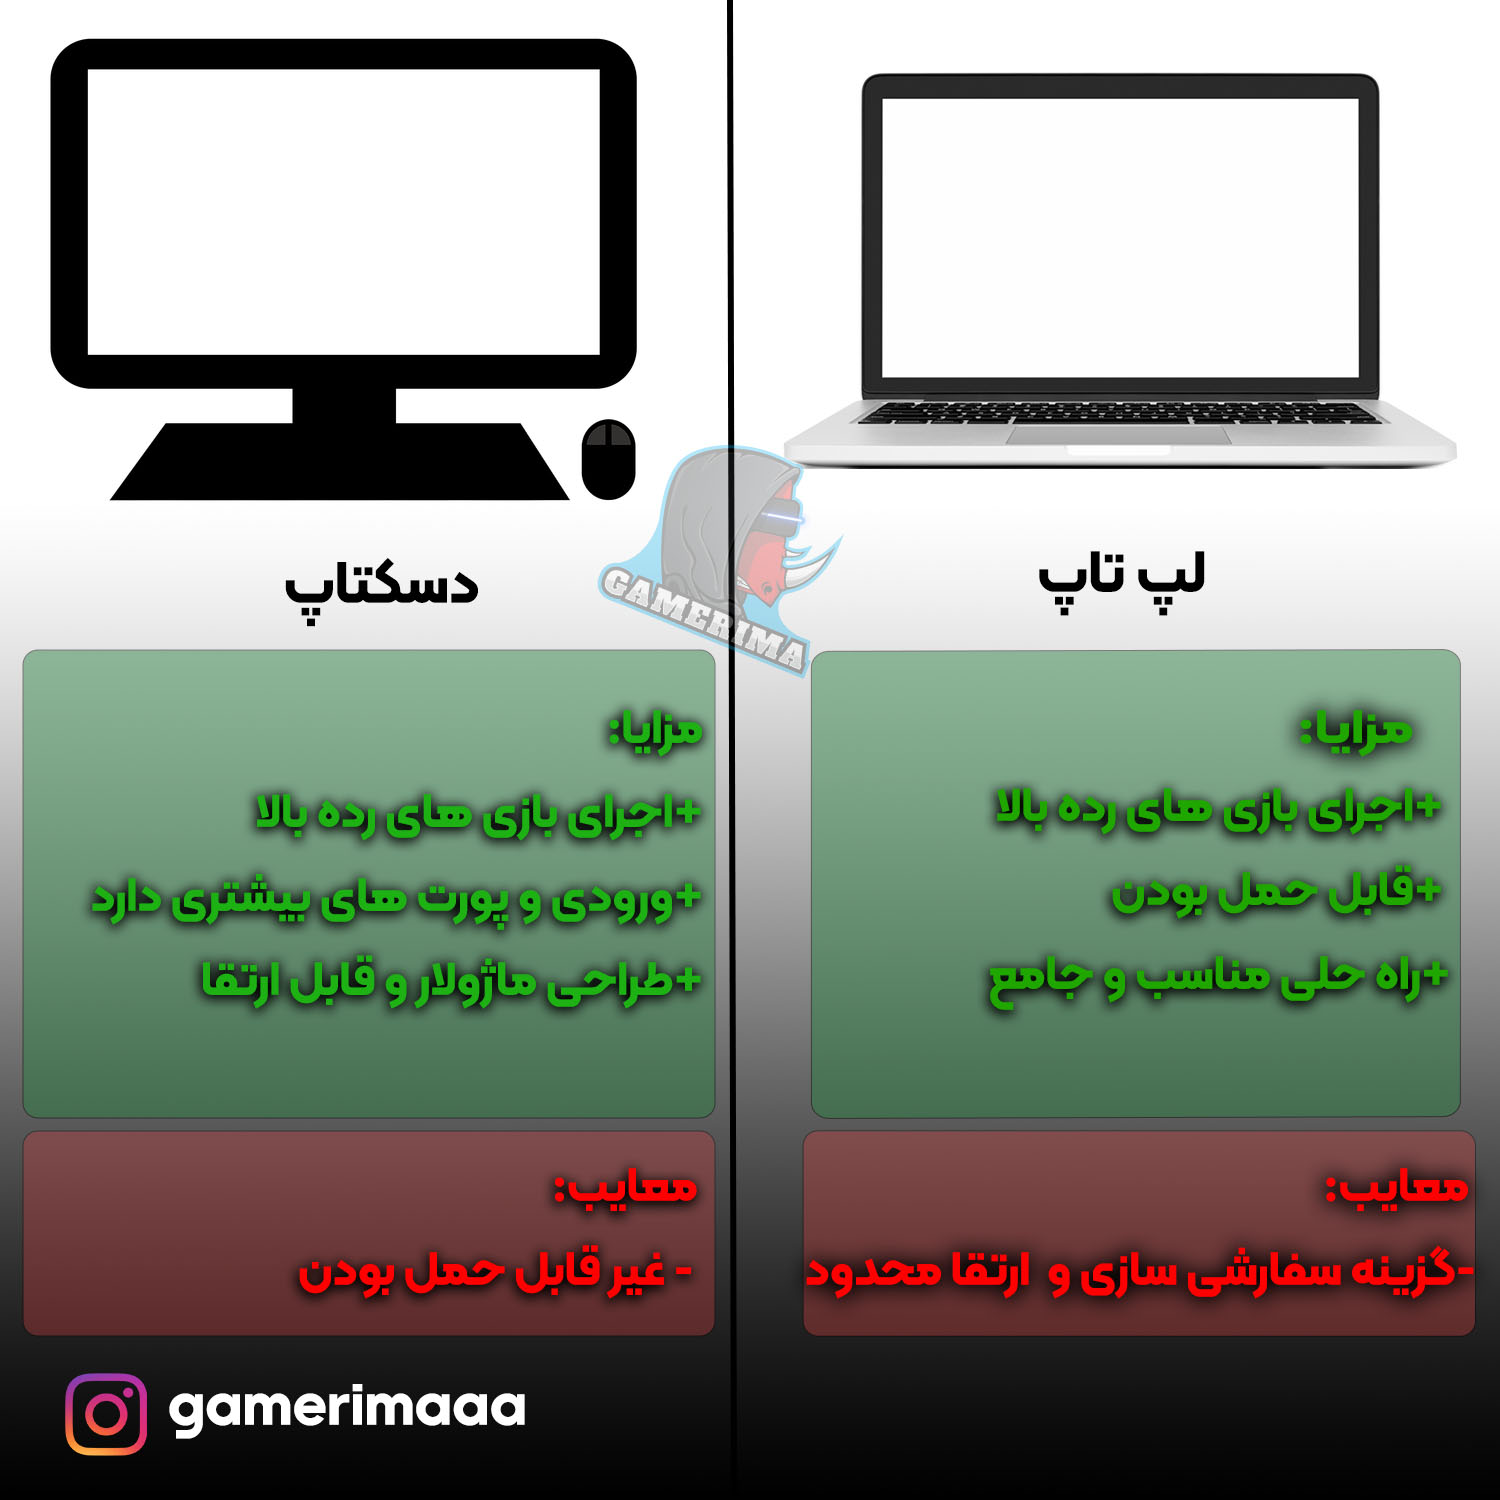 PC vs Gaming Laptop